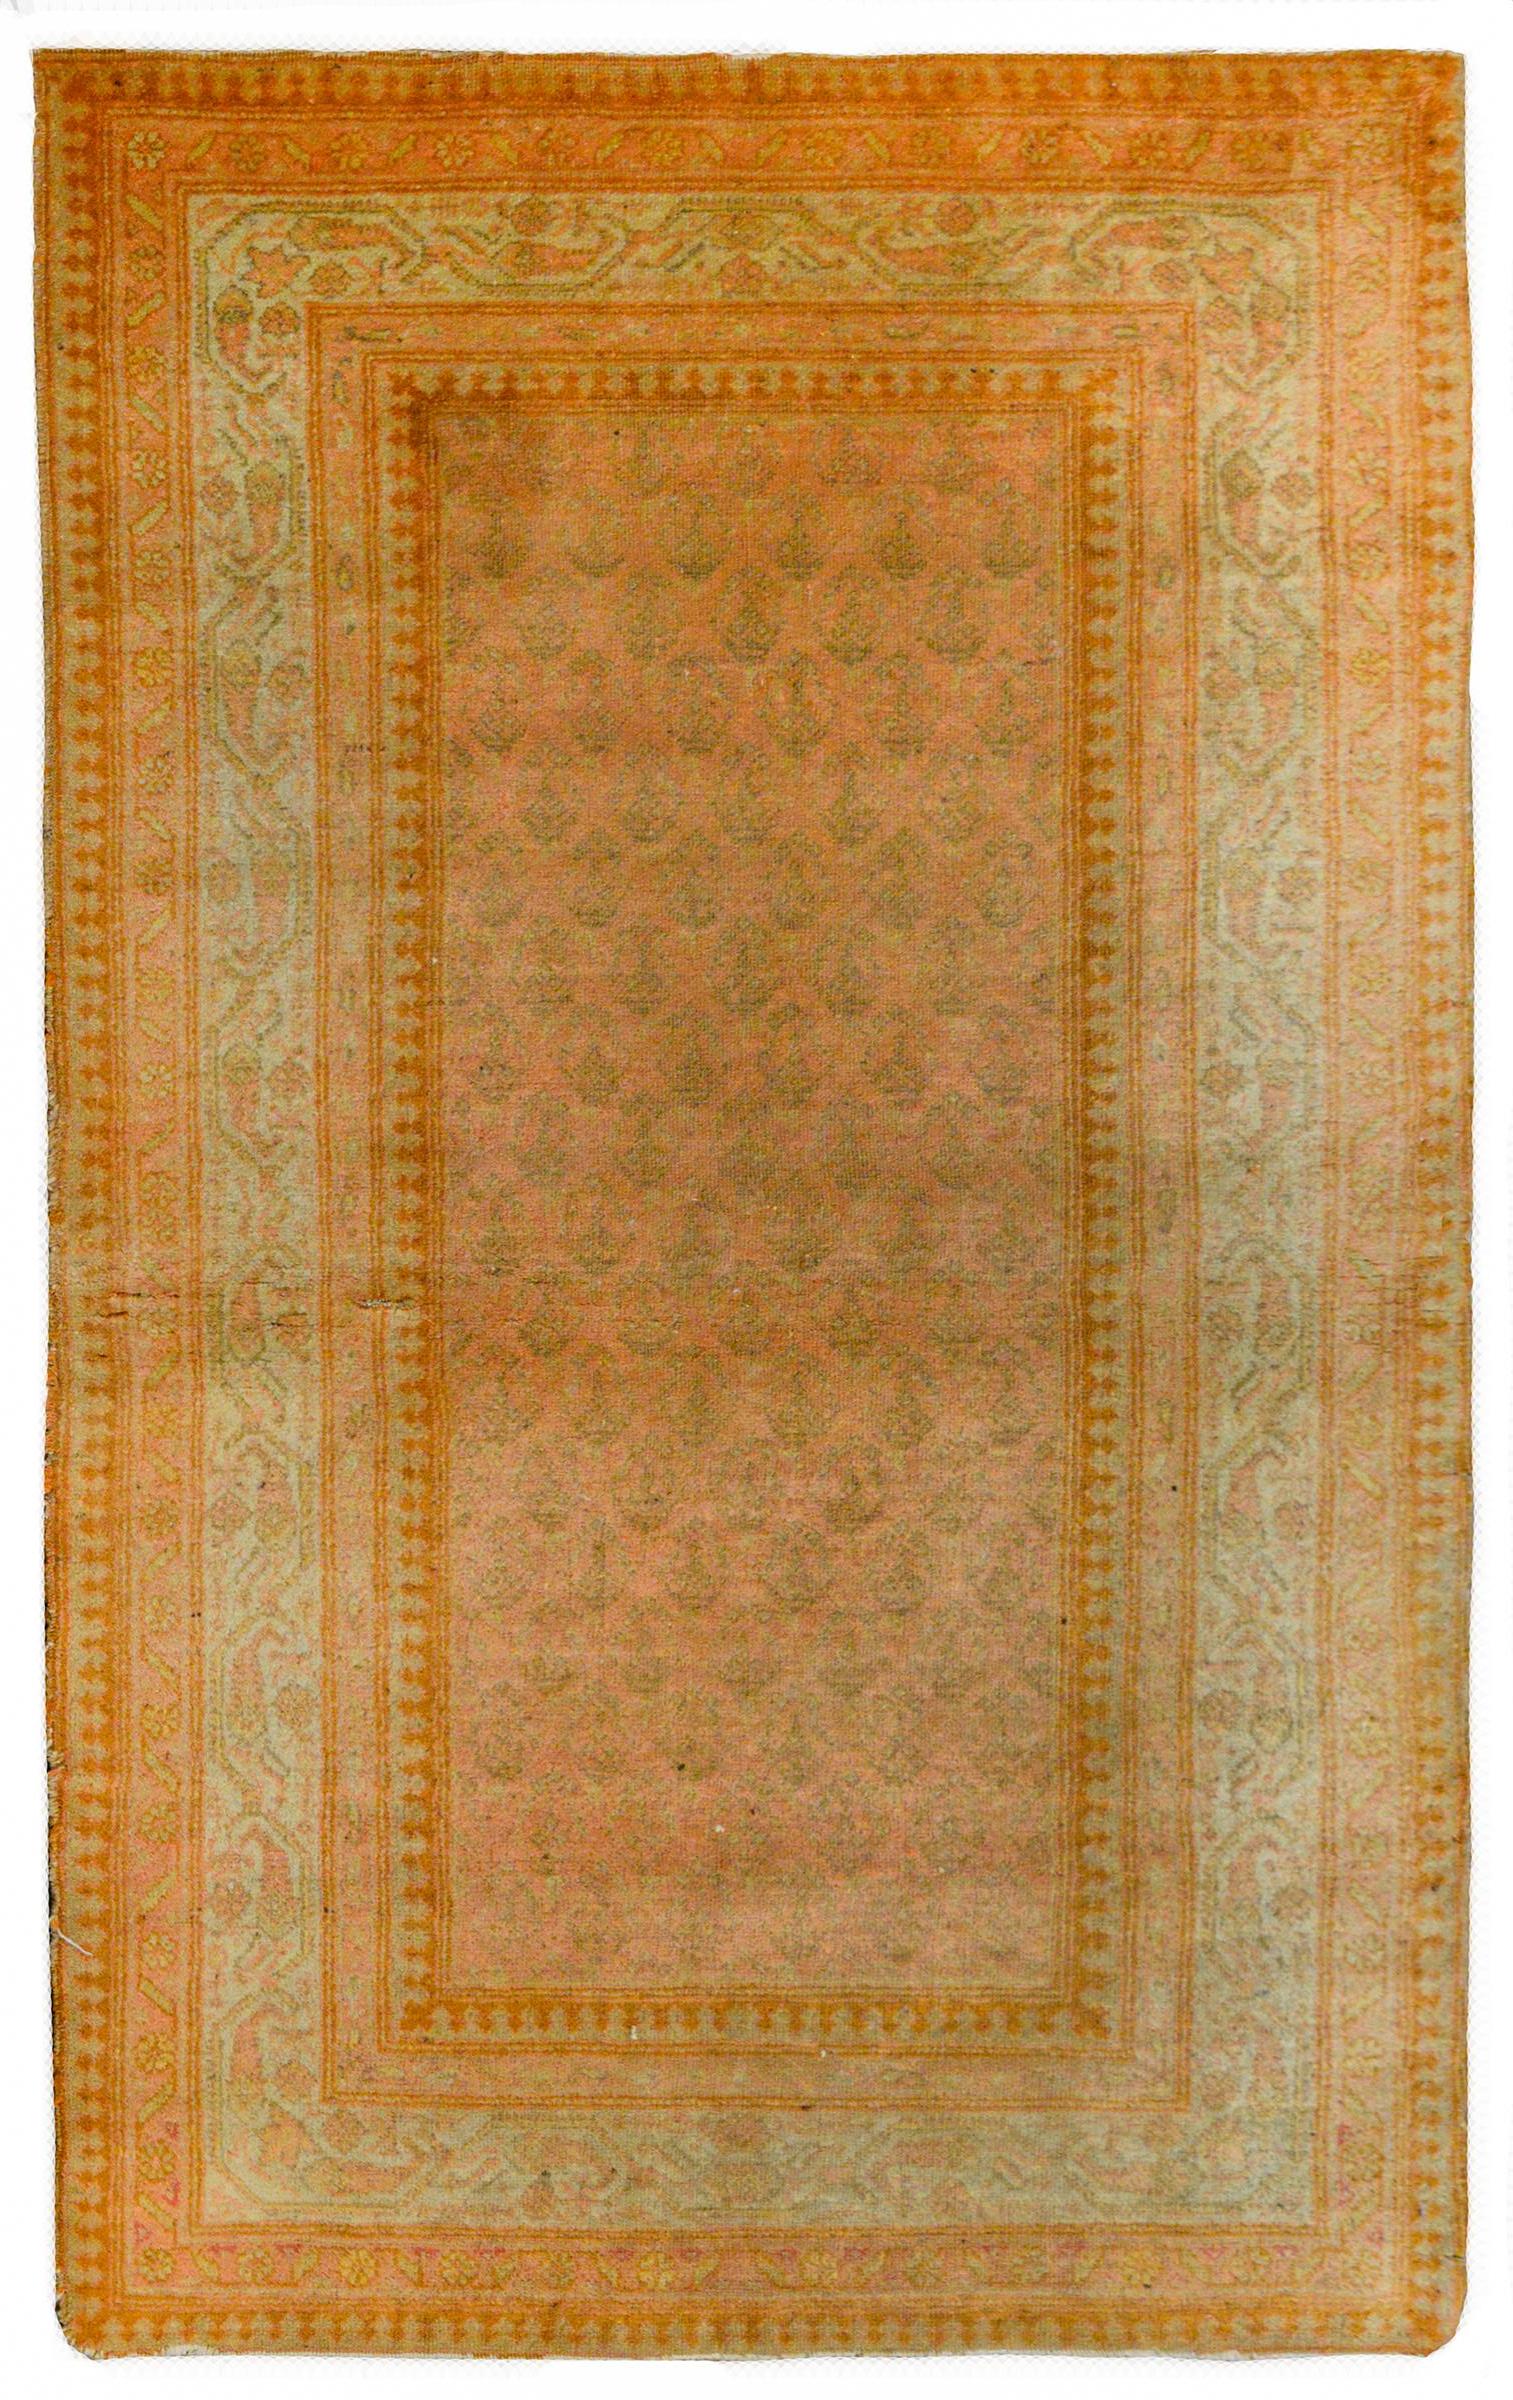 Magnifique tapis Persan Seraband du début du 20ème siècle avec un motif cachemire tissé dans un simple ton sur ton de couleur rose et taupe, entouré d'une large bordure contenant de multiples rayures stylisées à motif floral tissées dans des